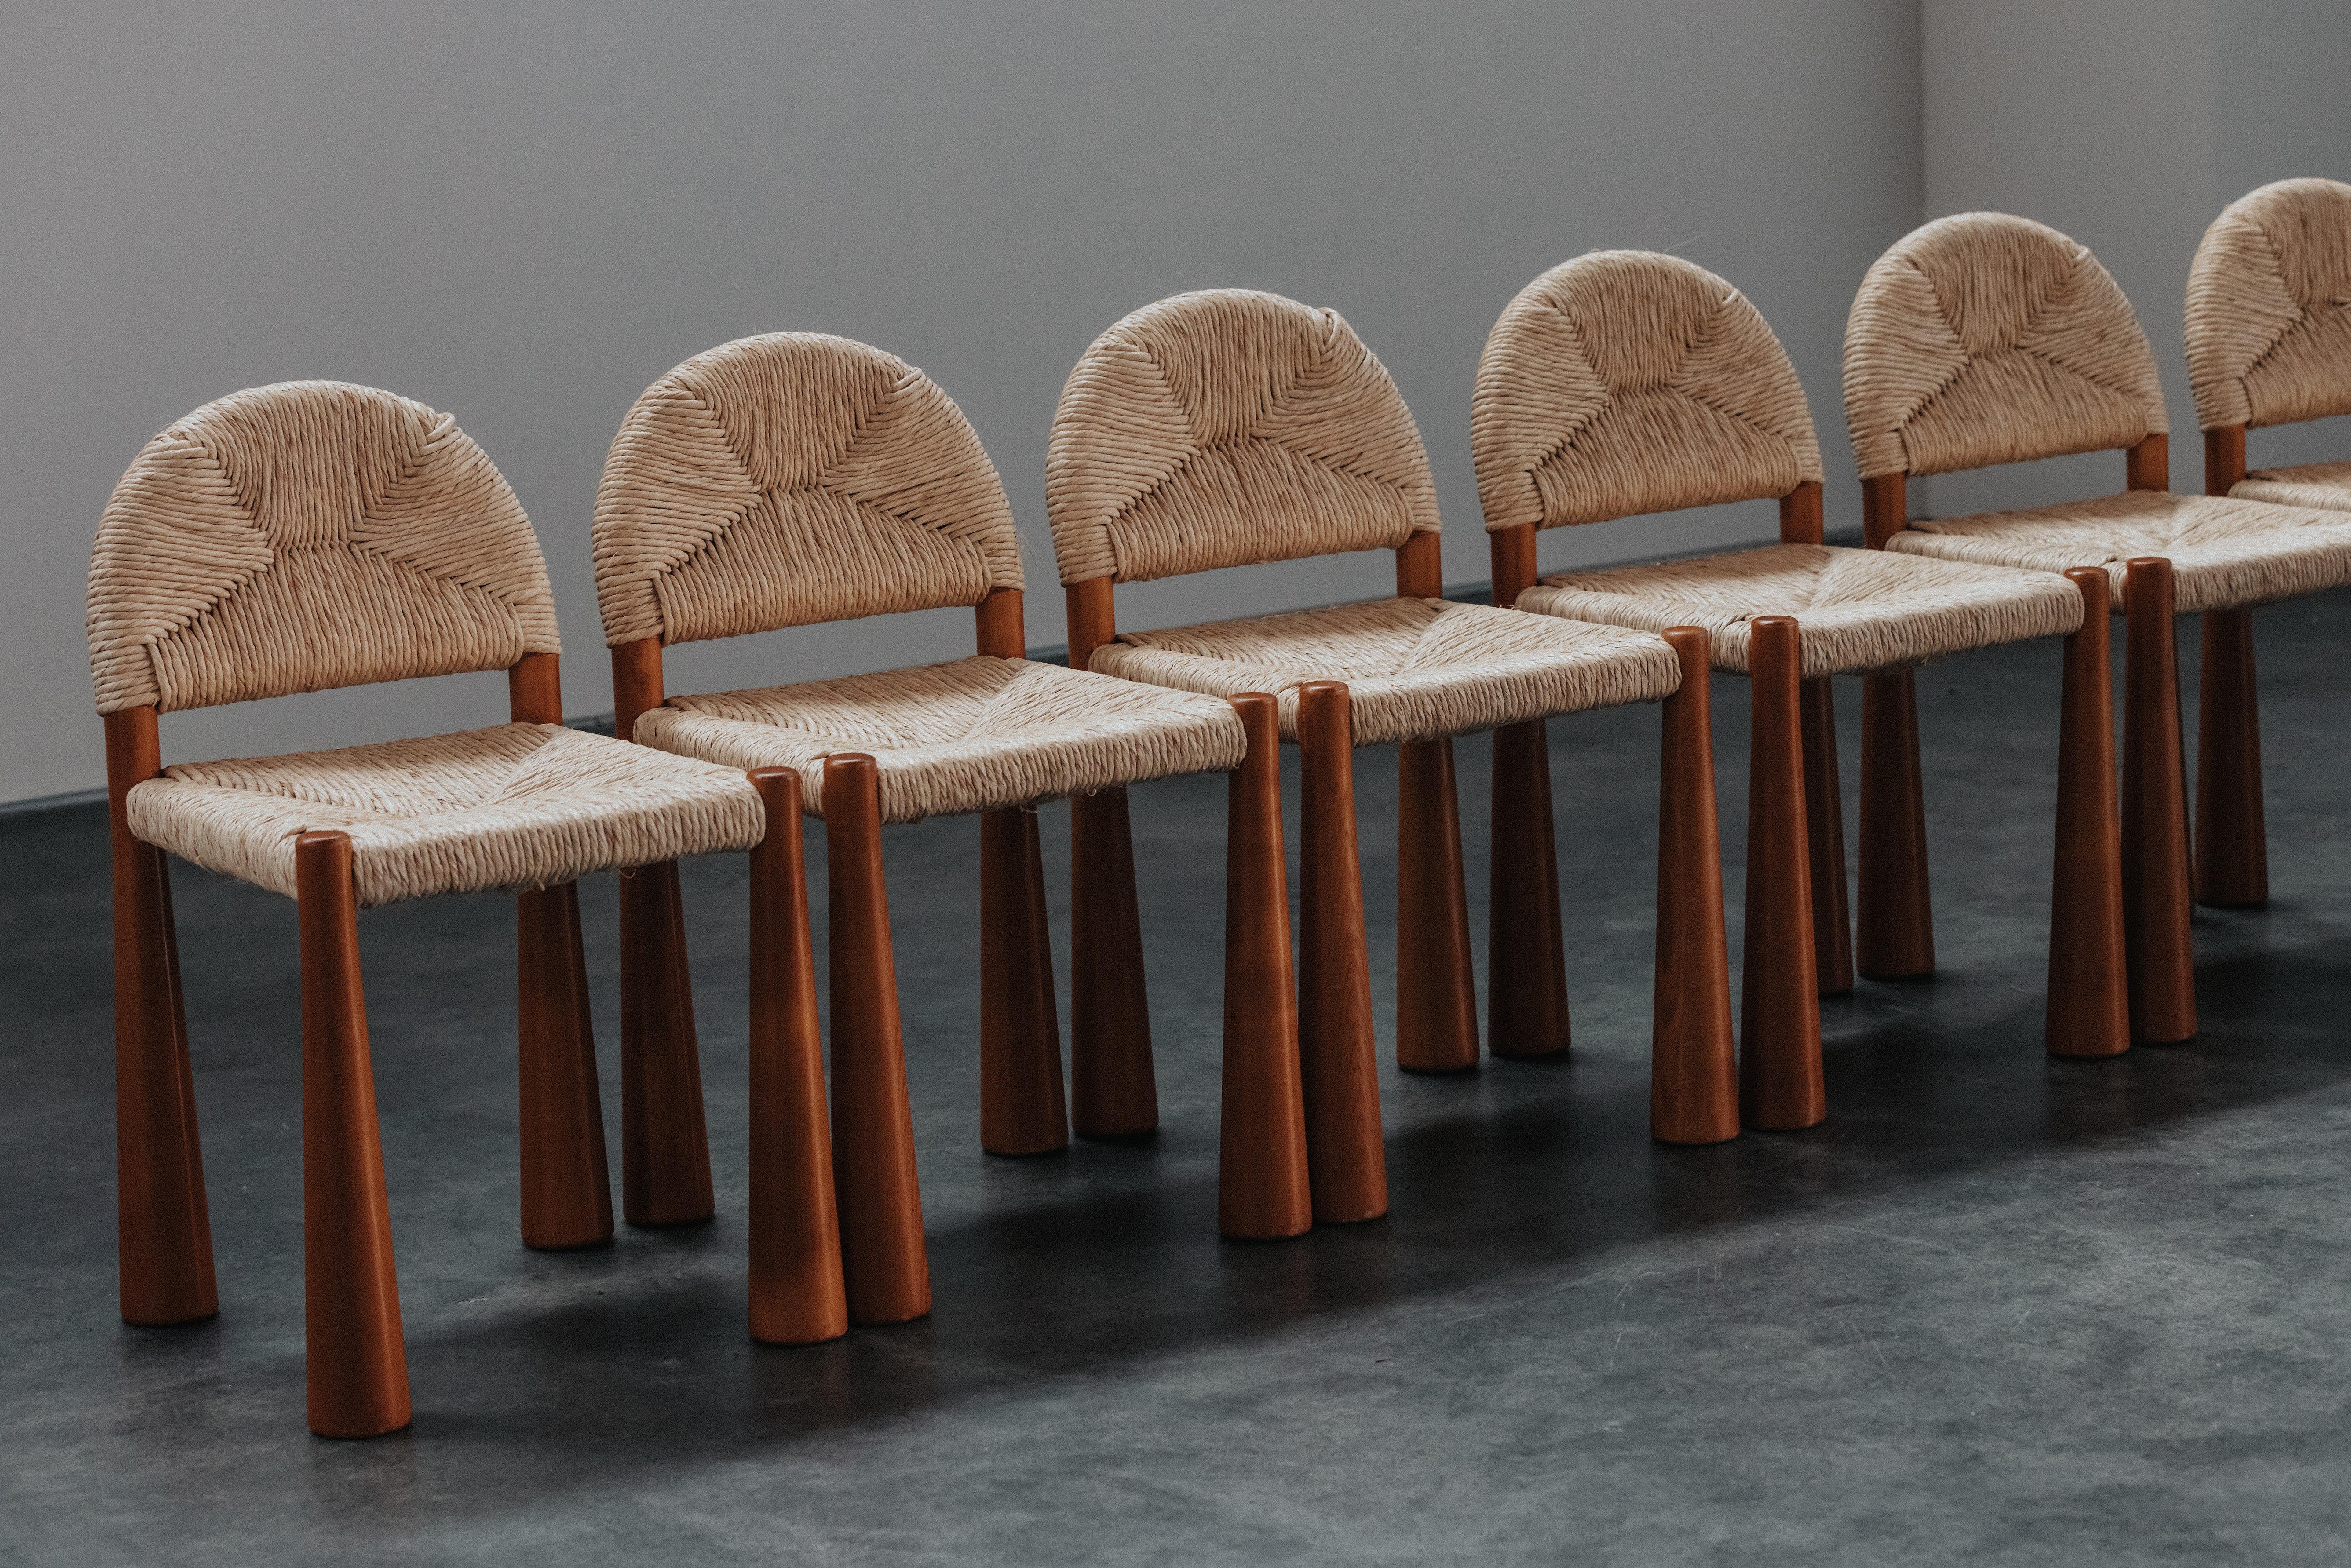 Vintage By Sechs Esszimmerstühle von Alessandro Becchi für Giovanetti, Italien 1970.  Seltener Satz Kiefernstühle mit geflochtenen Sitzen.  Leichte Abnutzung und Gebrauchsspuren.